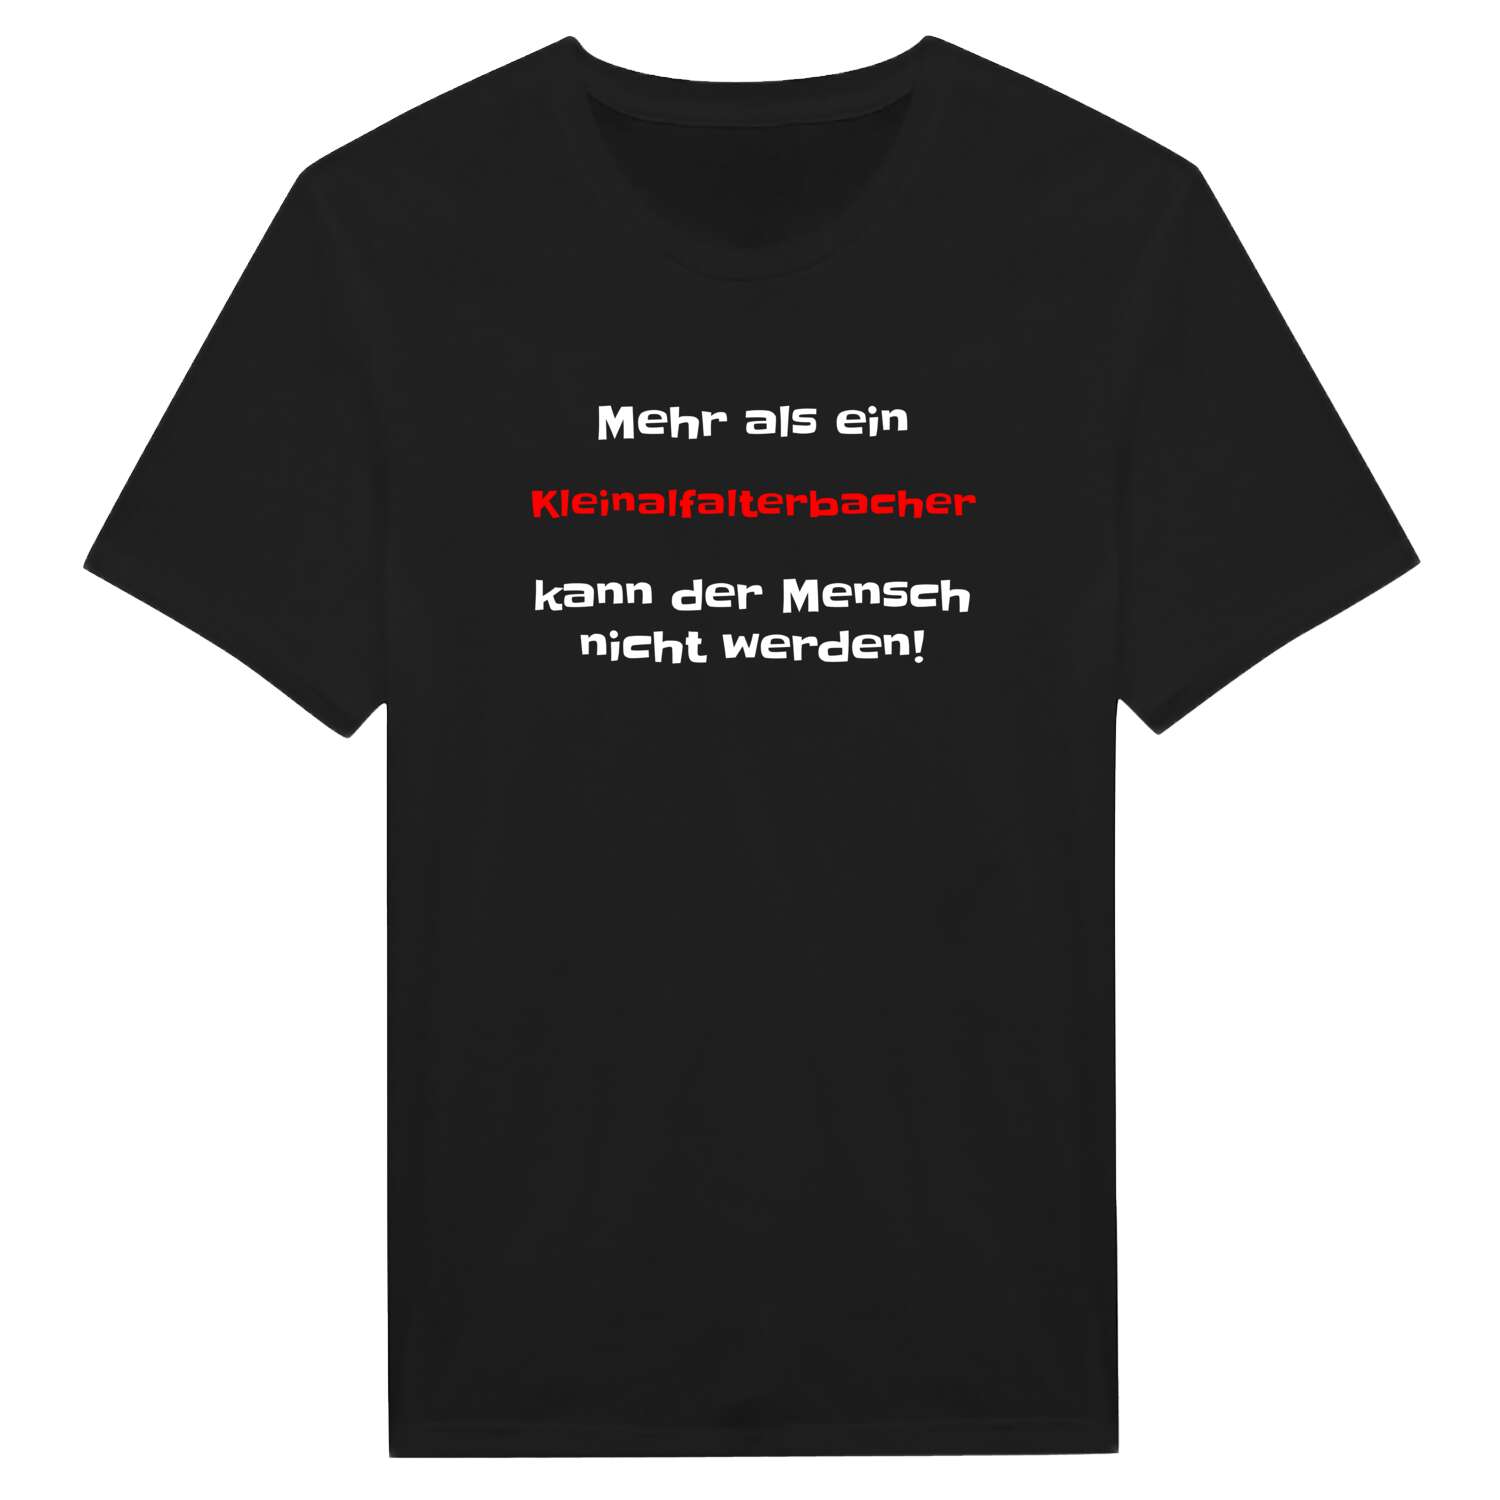 Kleinalfalterbach T-Shirt »Mehr als ein«